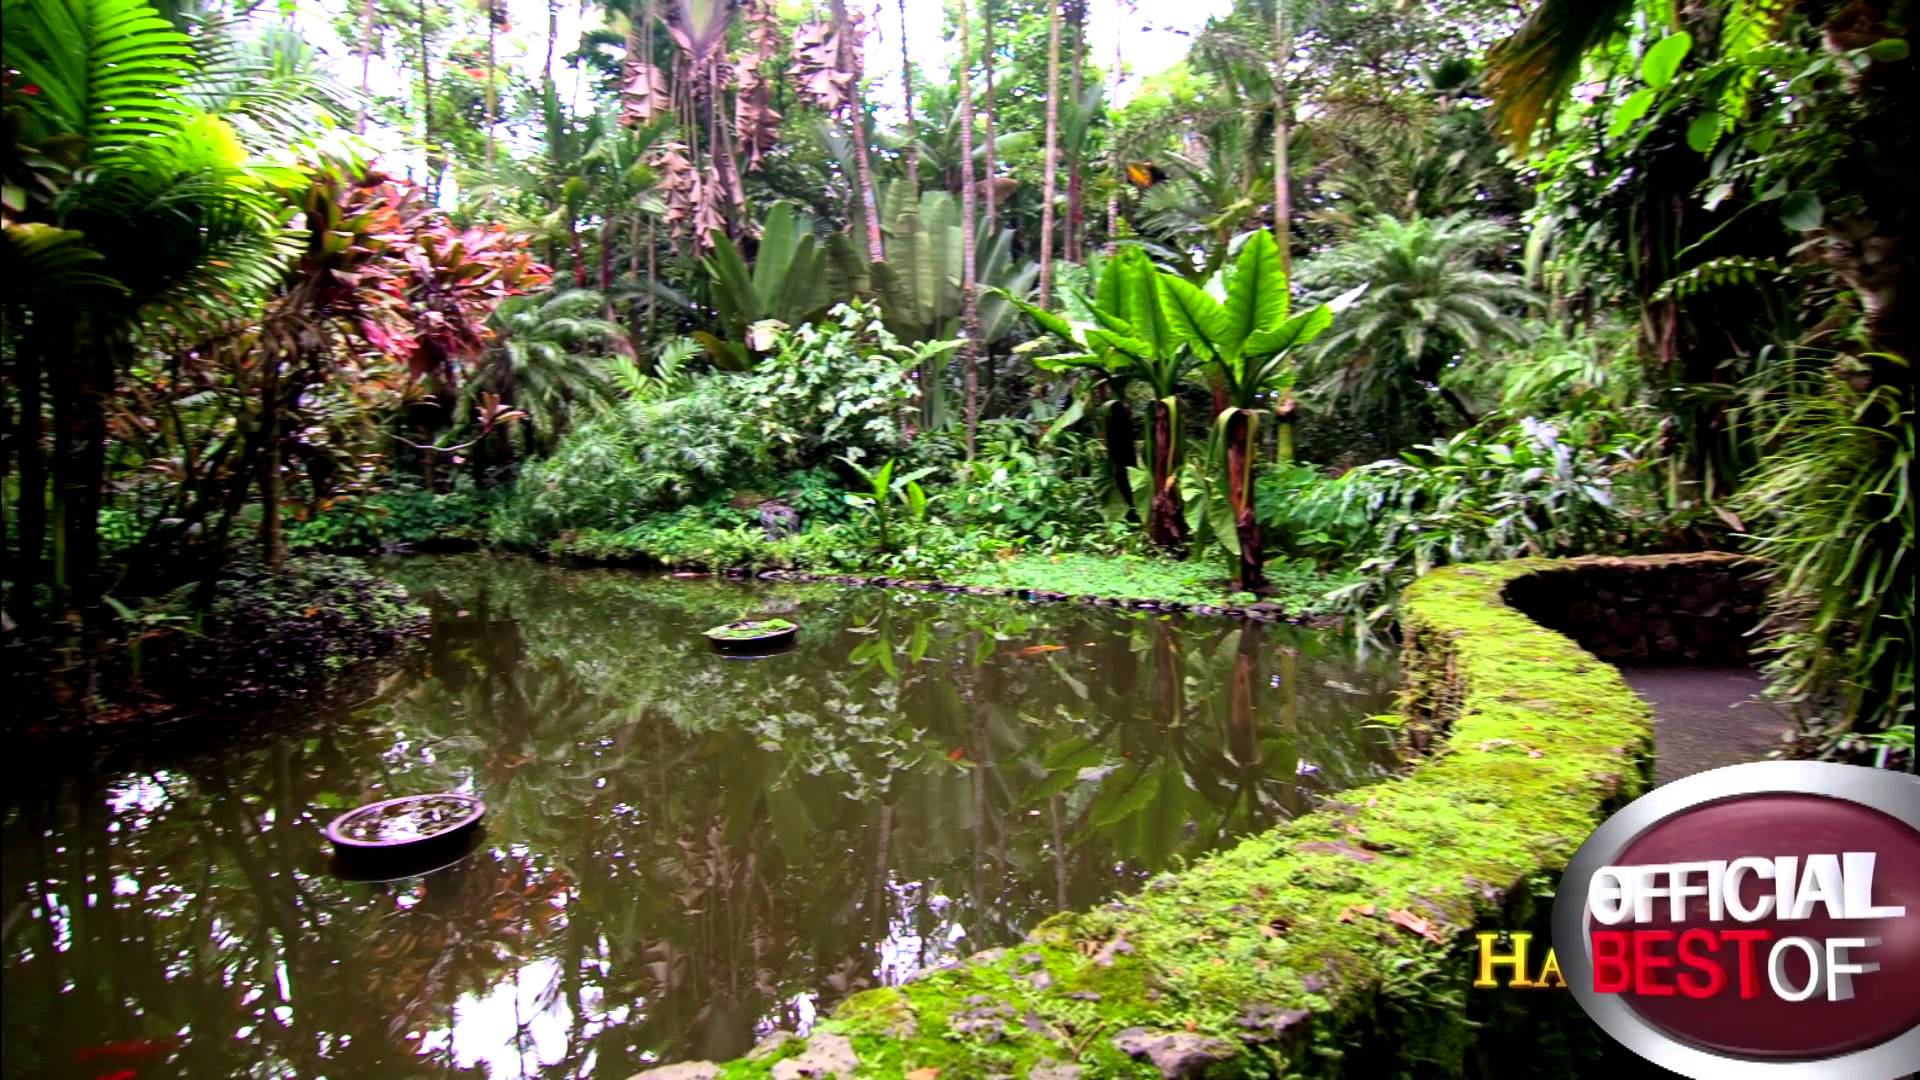 Hawaii Tropical Botanical Garden - Best Botanical Garden - Hawaii ...